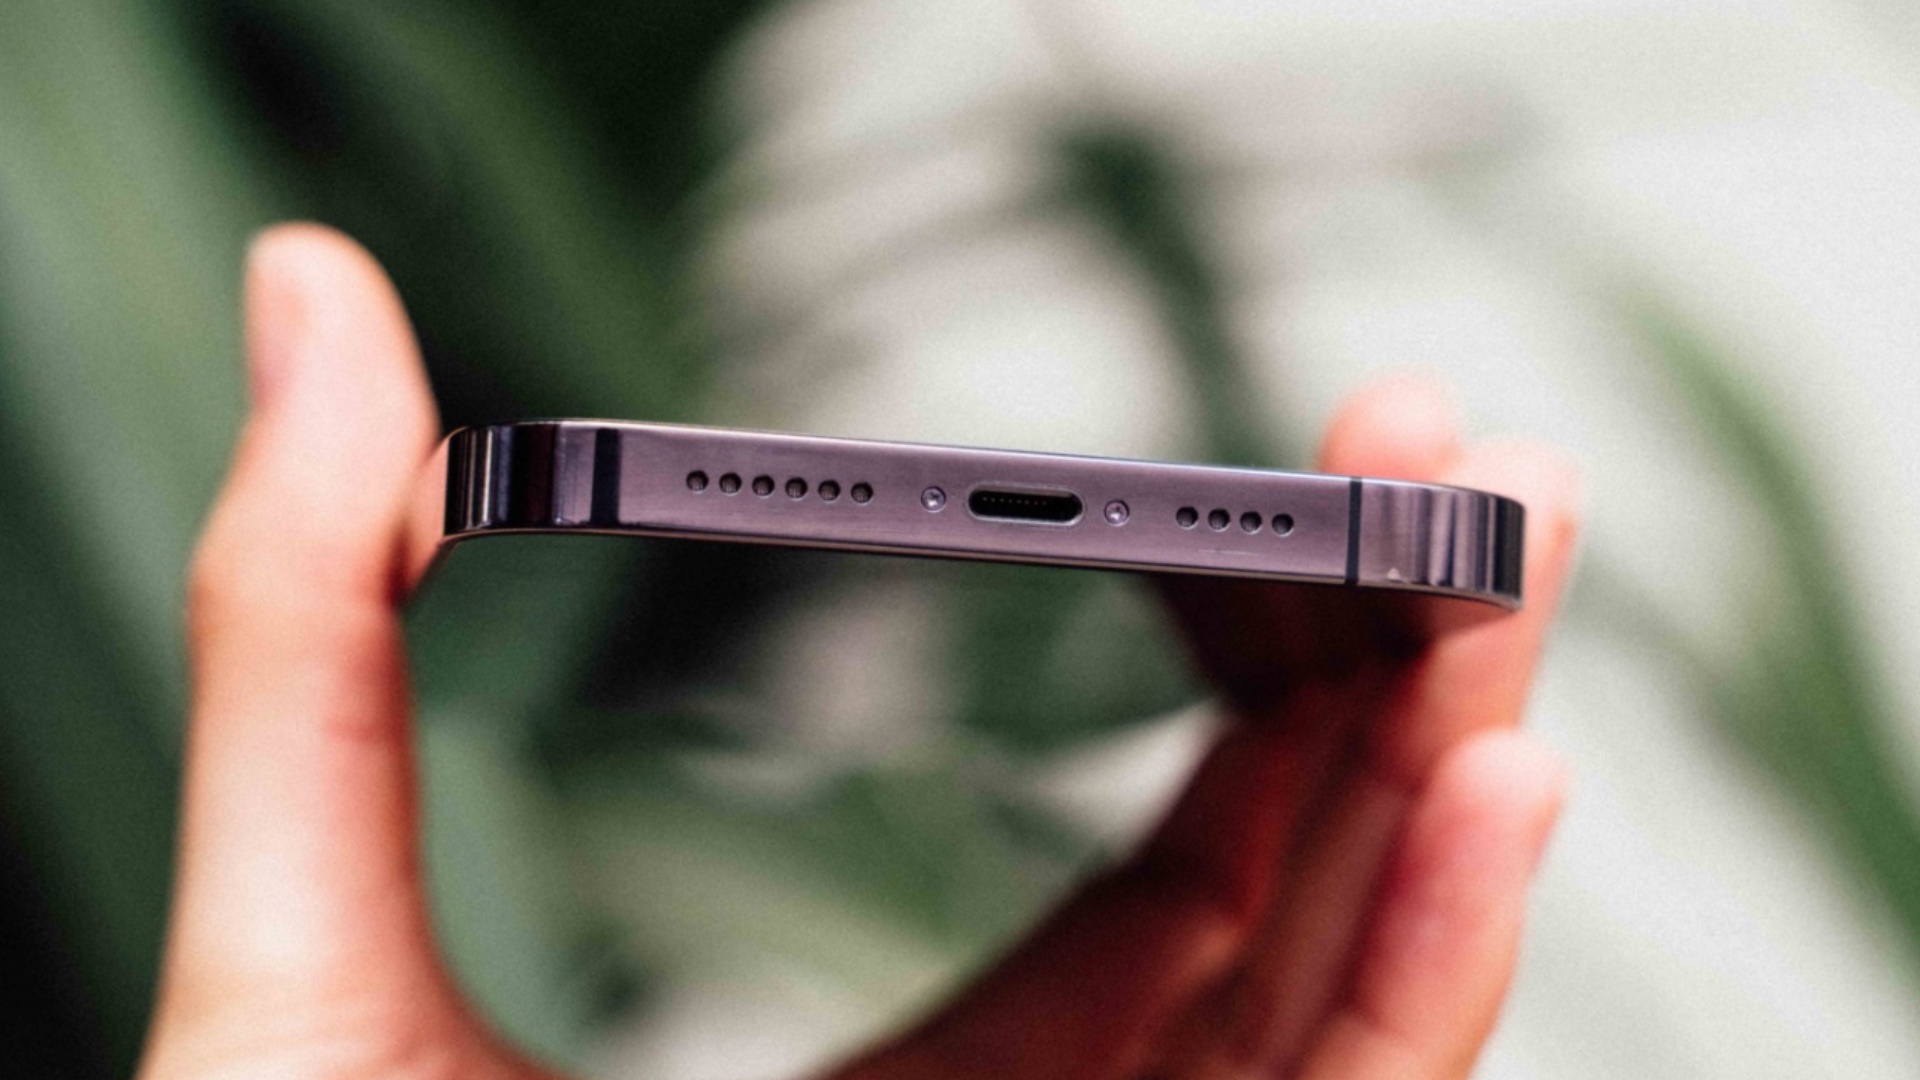 Quel produit Apple sera le prochain à adopter l'USB-C ?